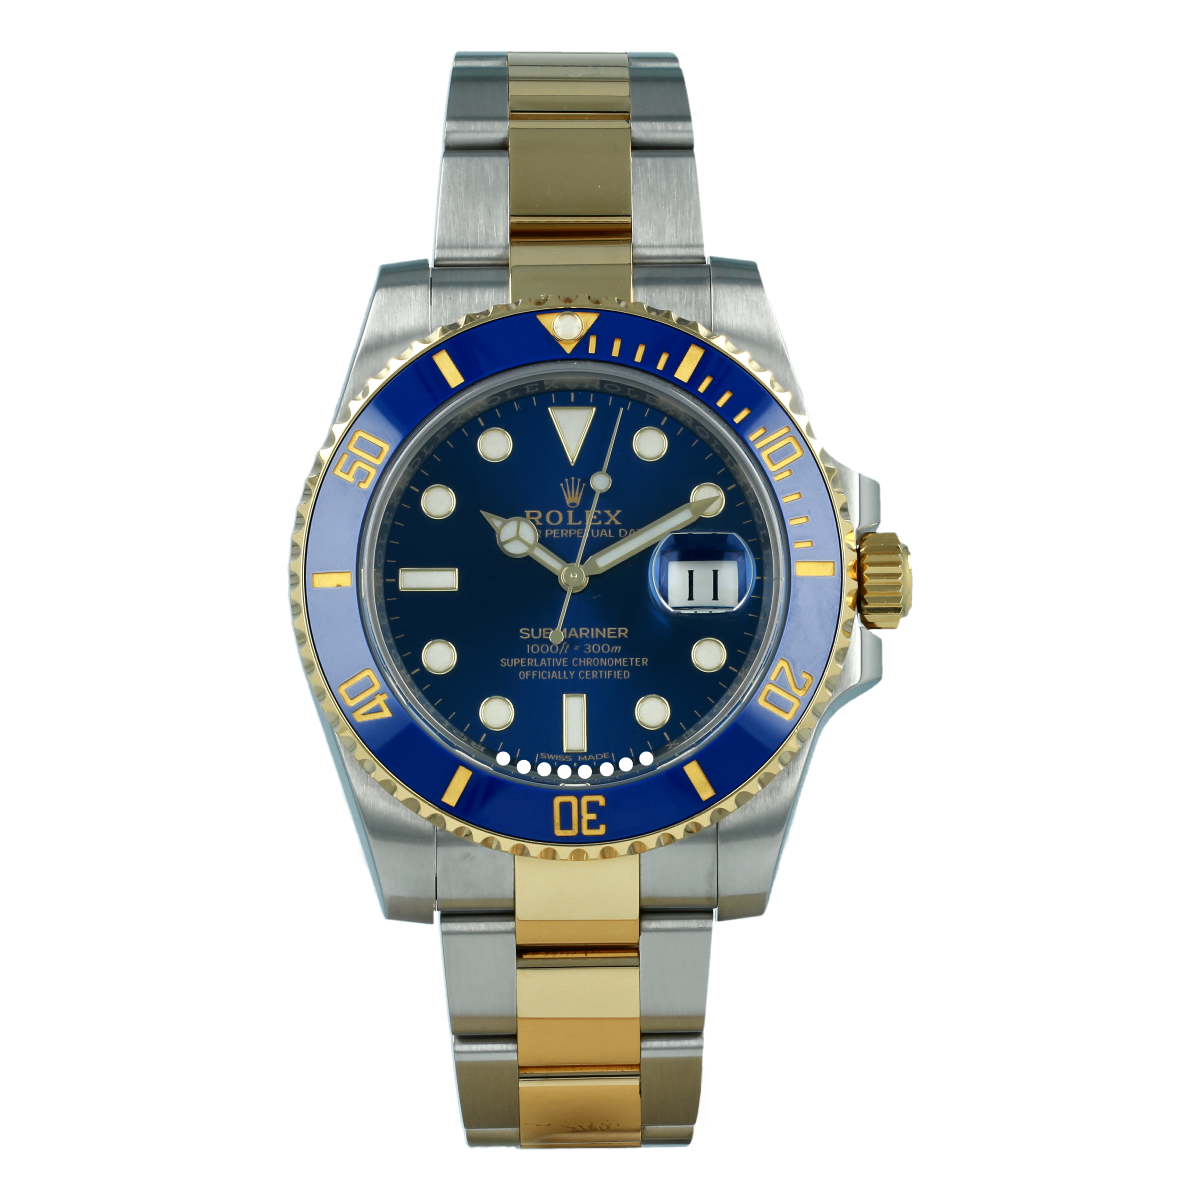 Rolex Submariner Date 116613LB Mixto | Comprar reloj Rolex de segunda mano